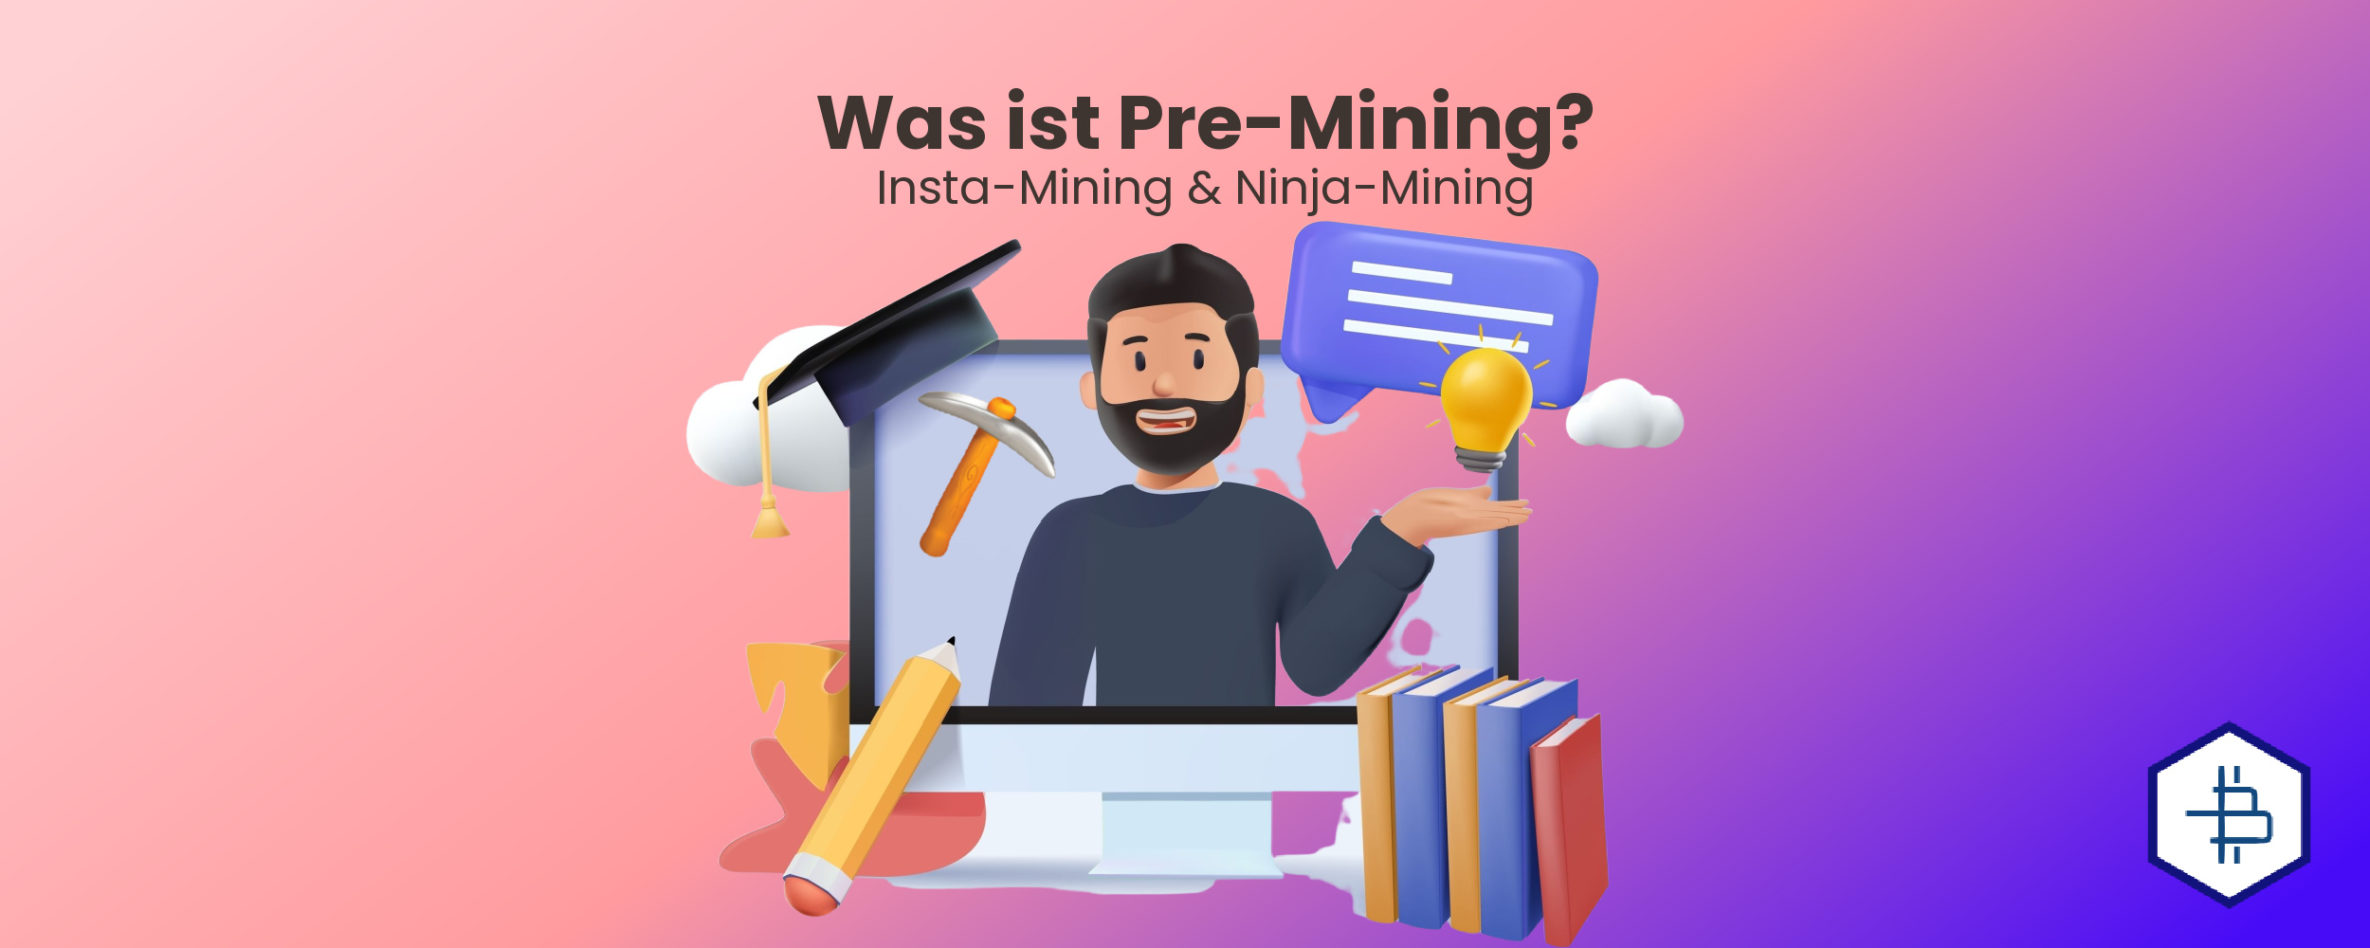 Was ist Pre-Mining